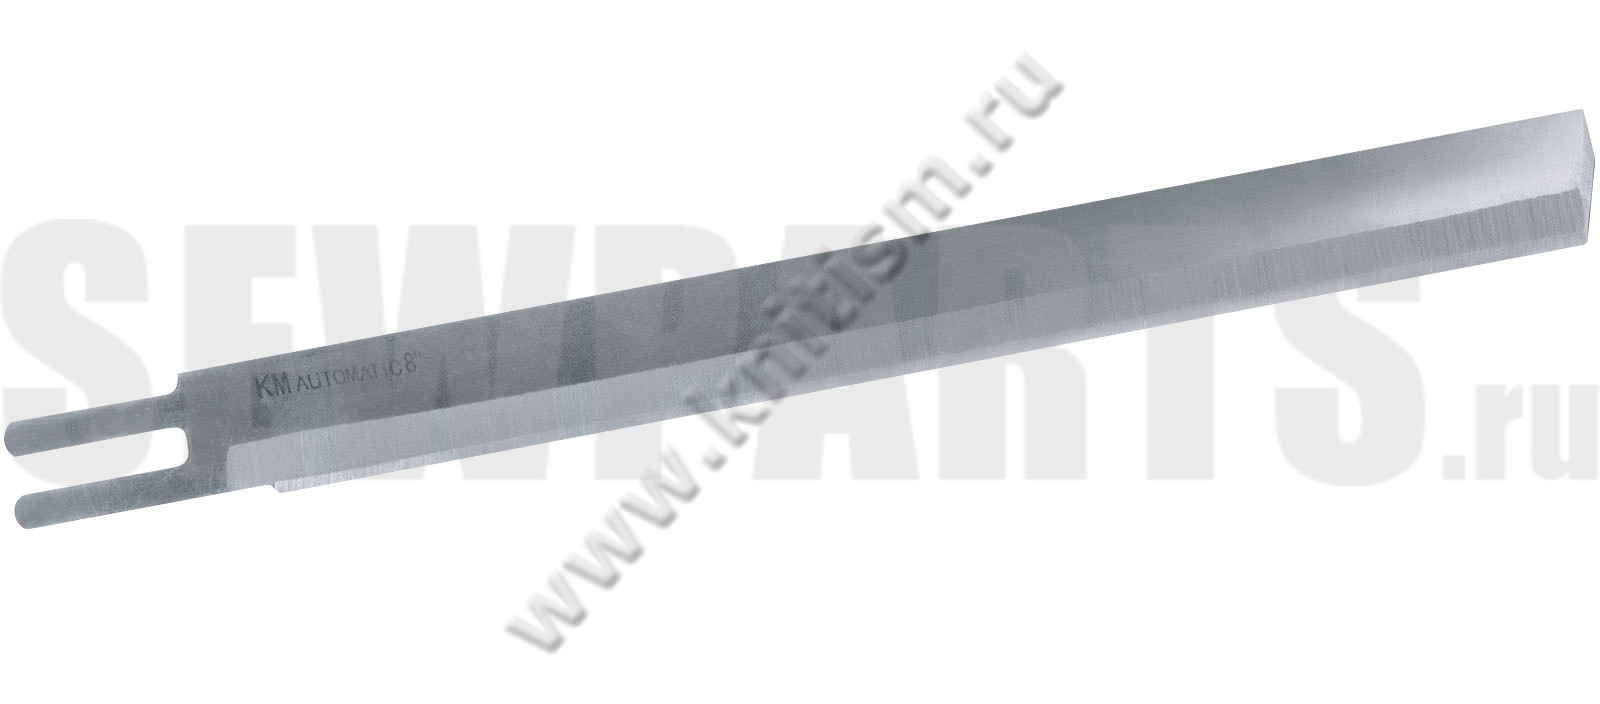 Нож с прямым лезвием длиной 7'' для вертикальных (сабельных) ножей